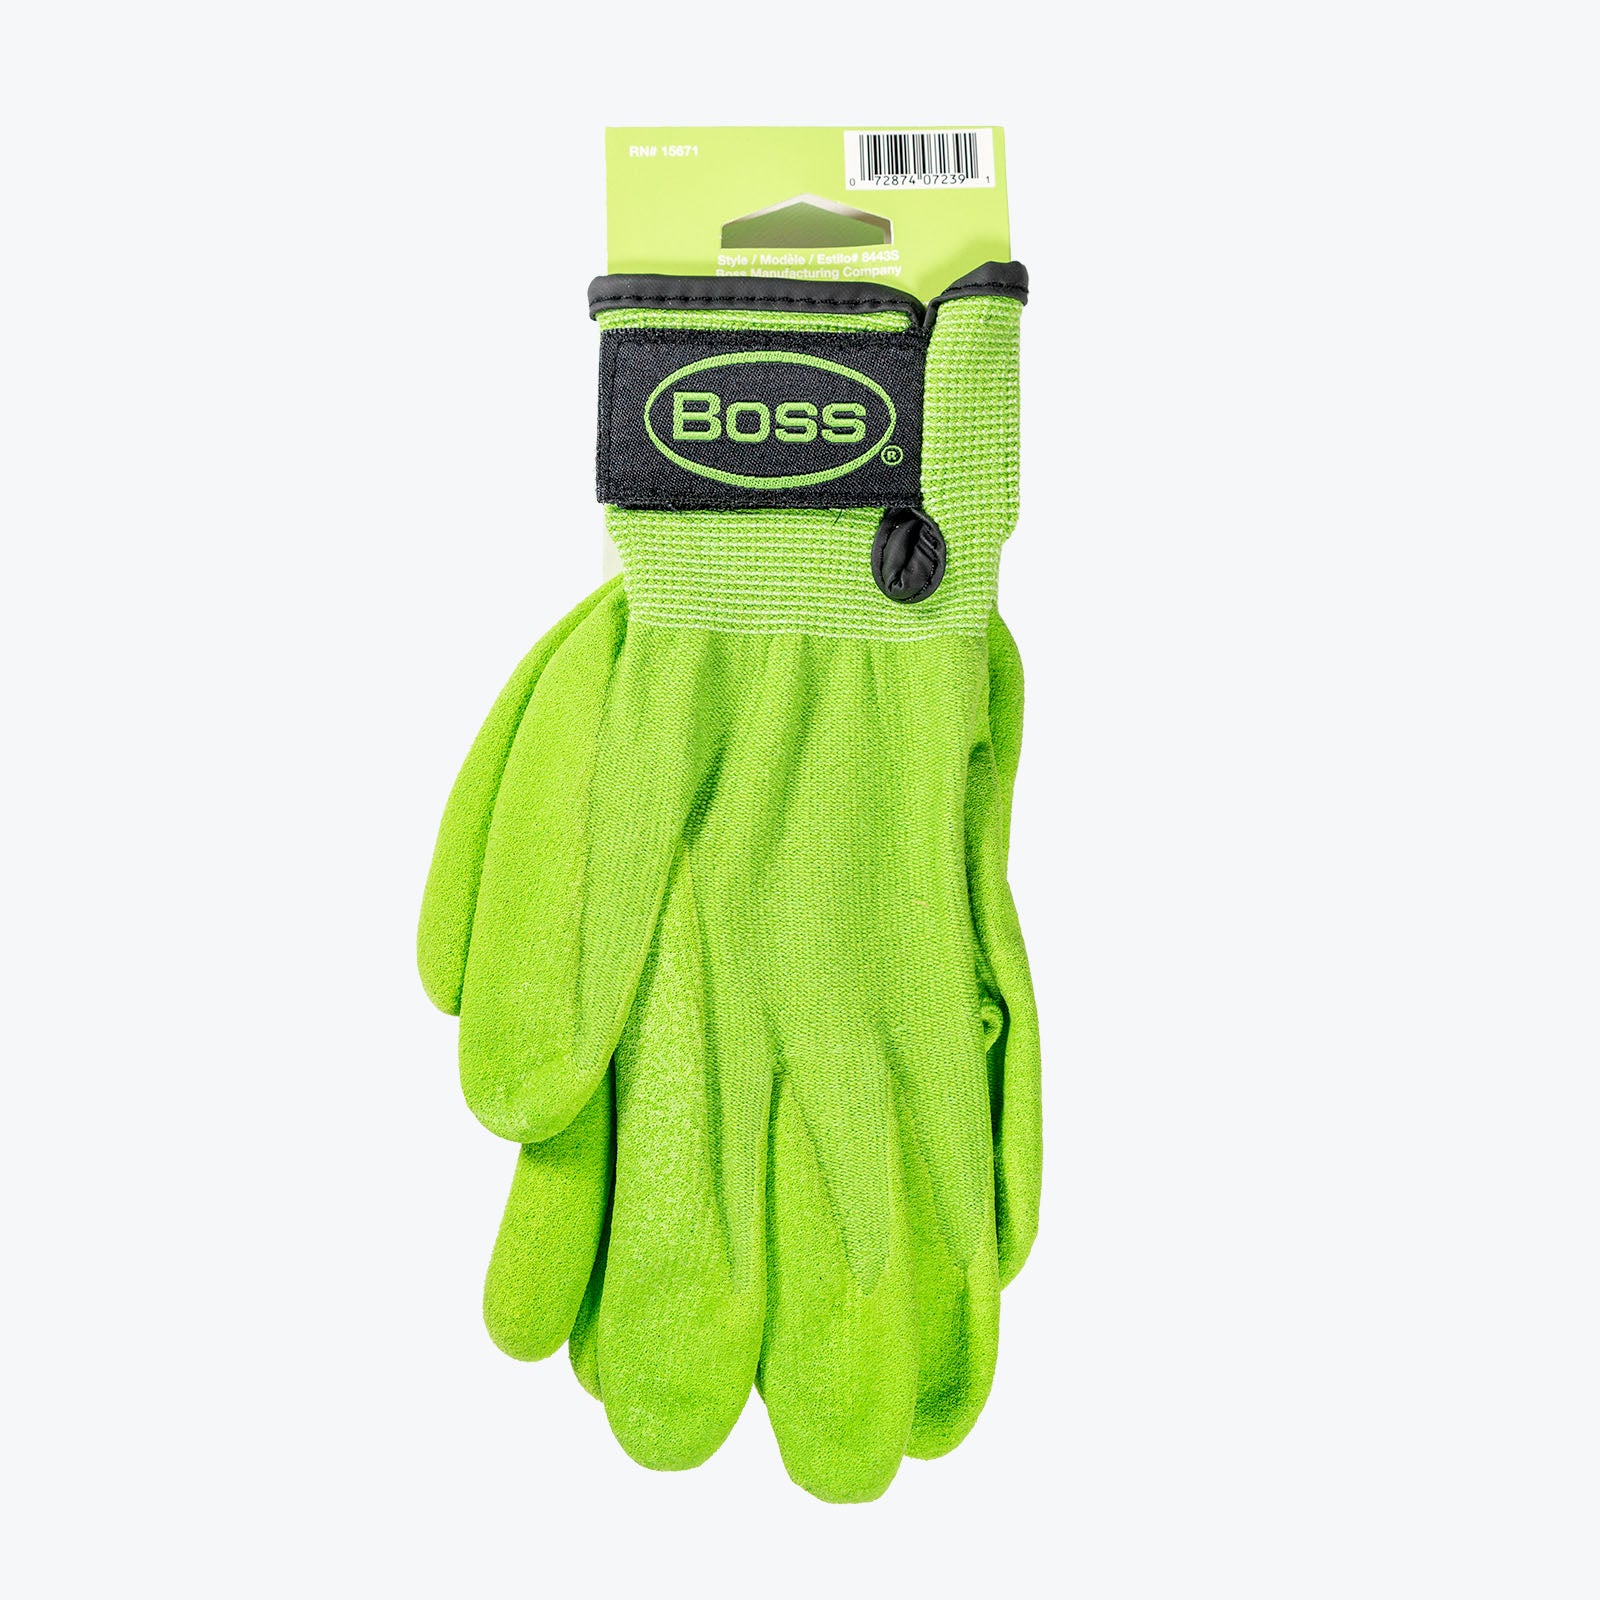 Garden Glove